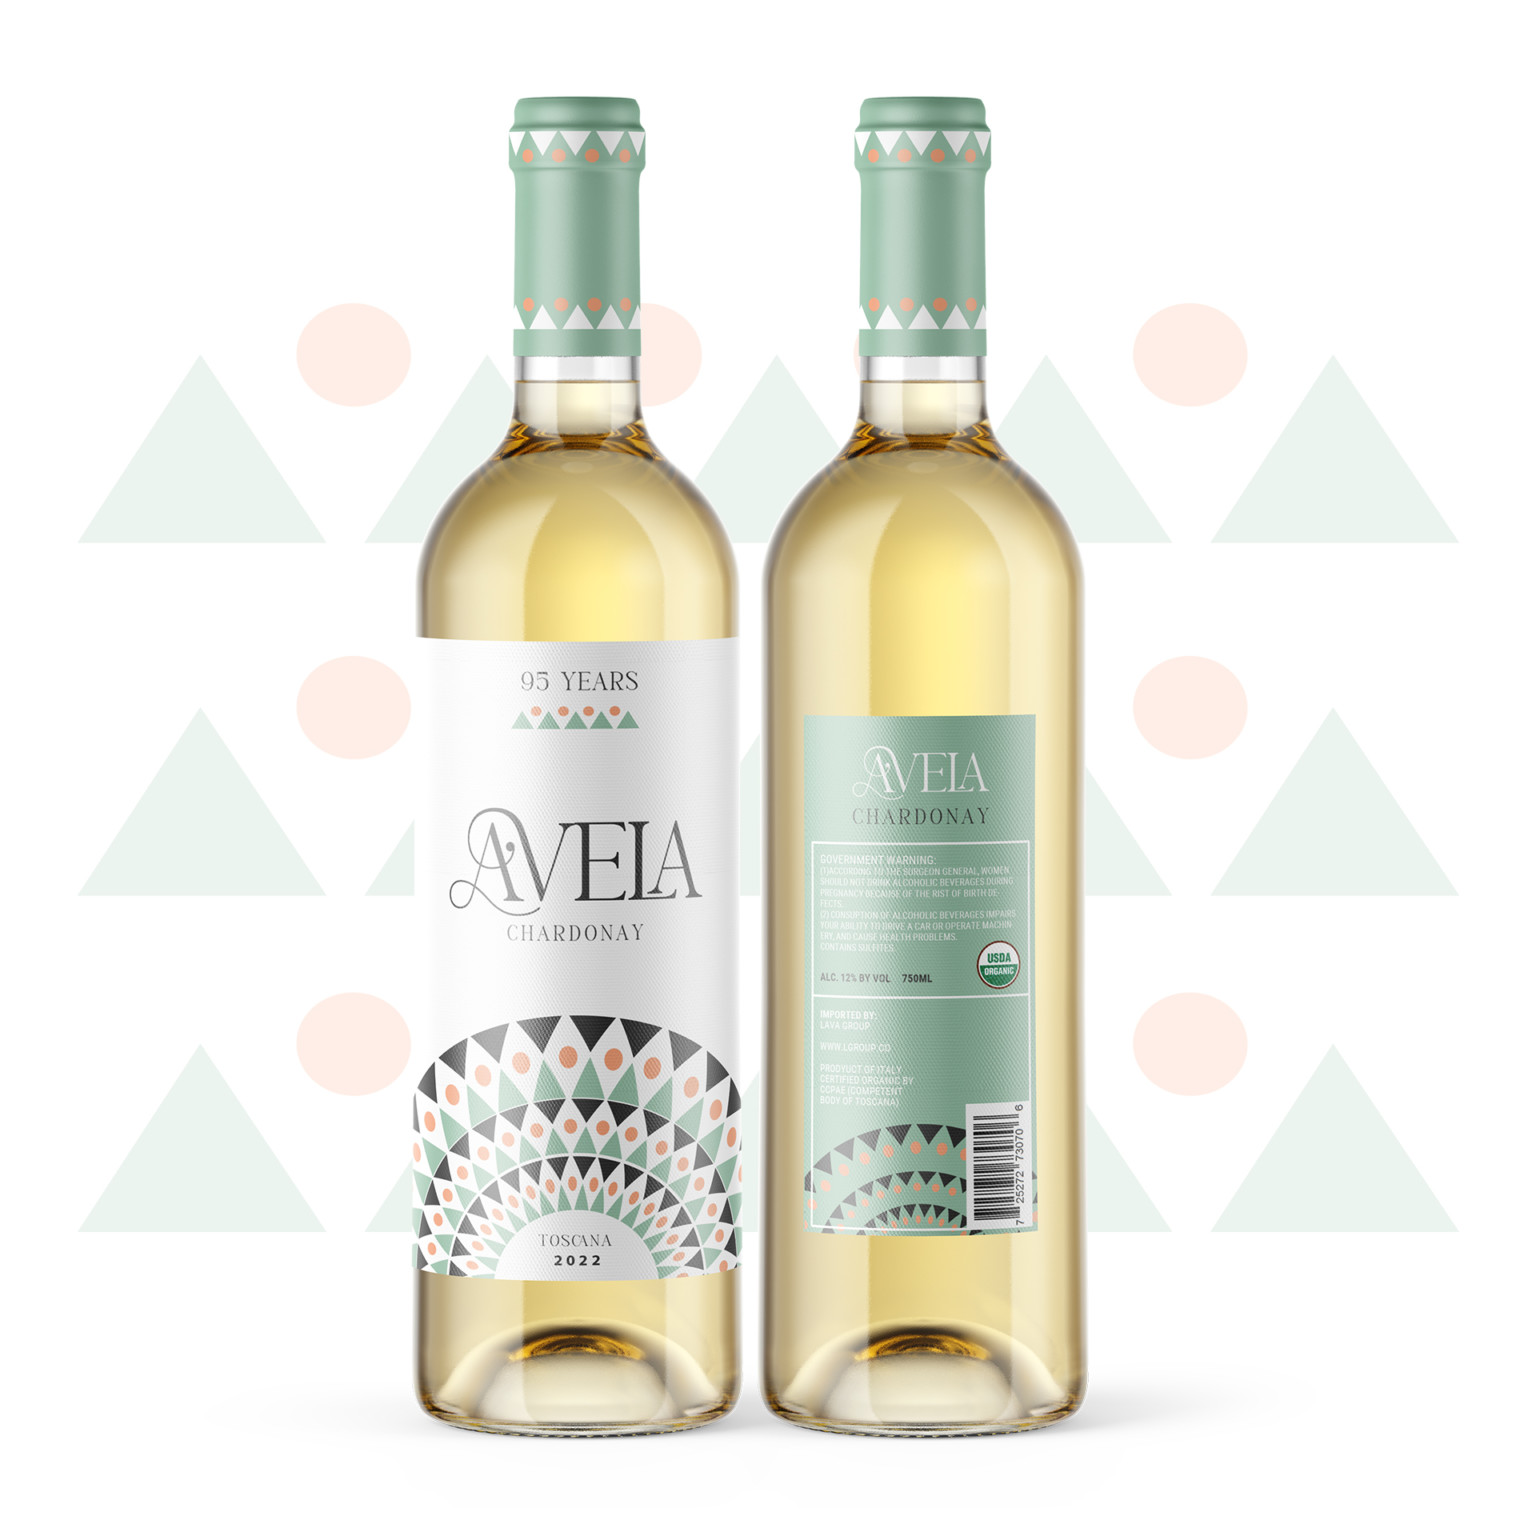 Avela Wine Packaging Design